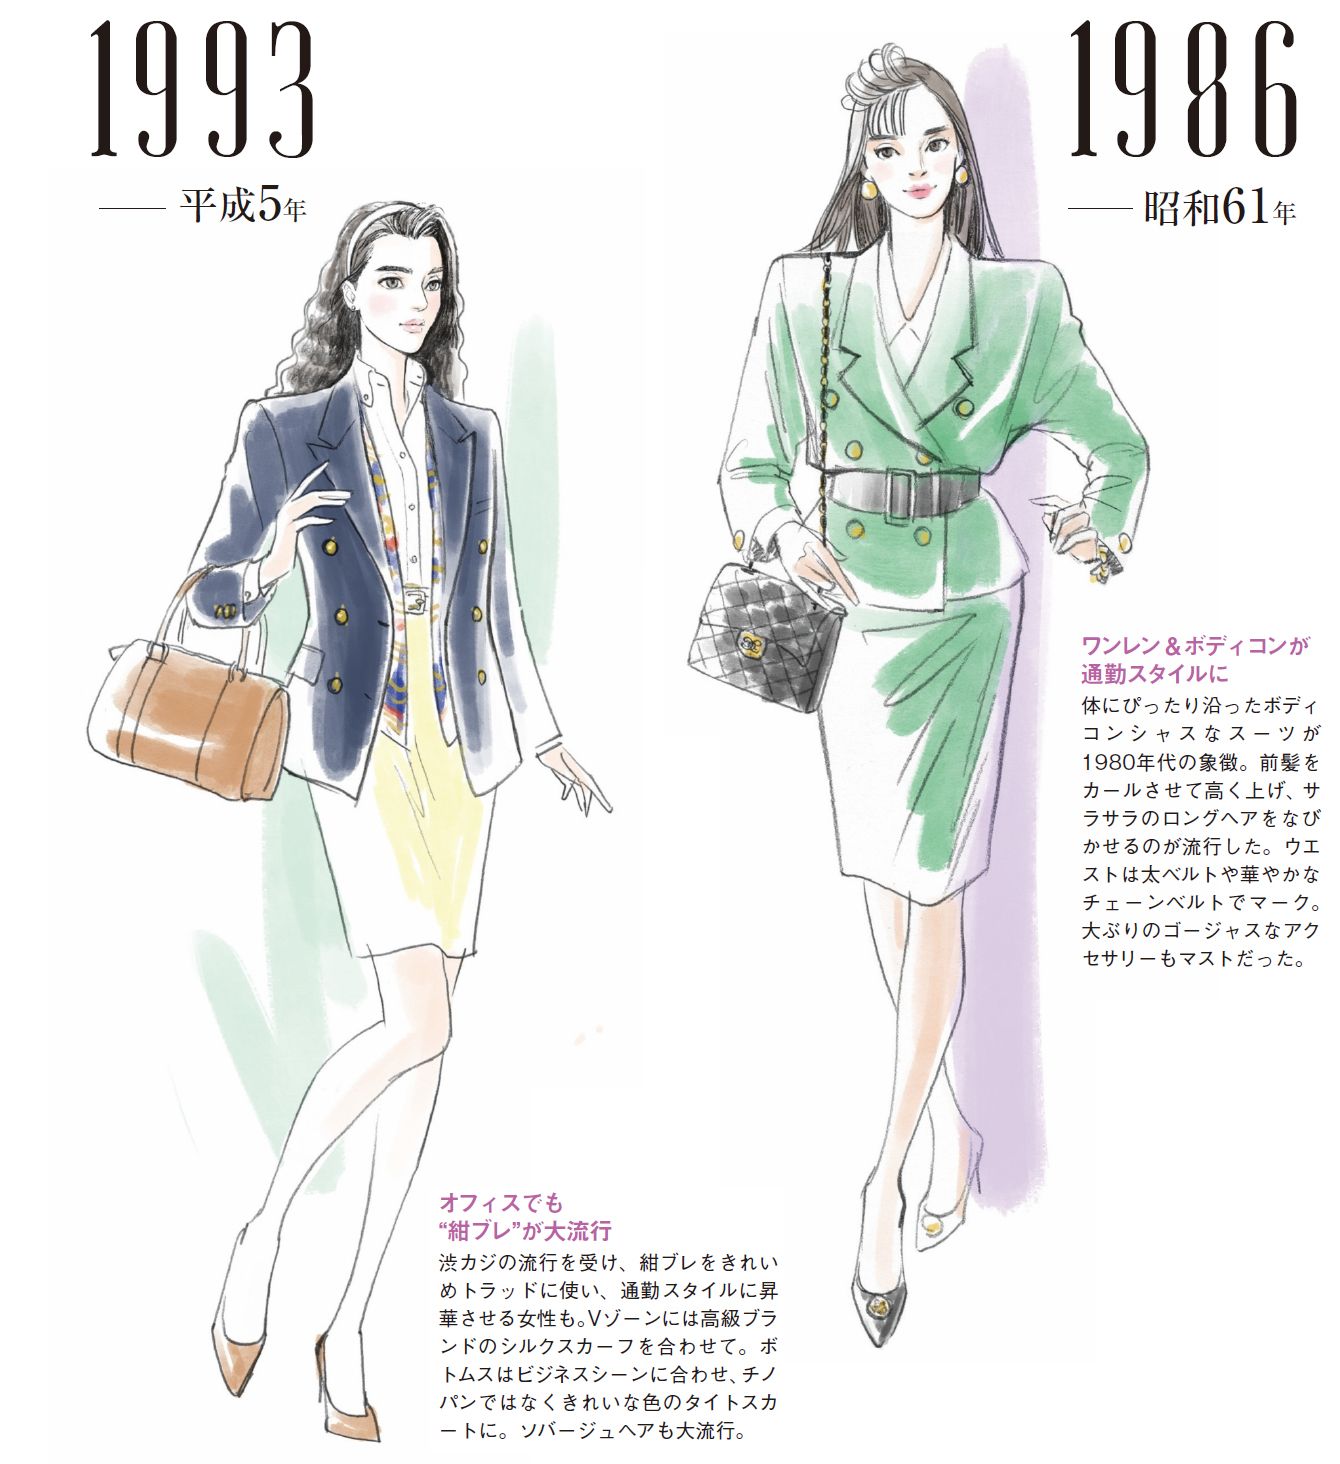 ハッピー 遅い 縁 80 年代 女性 ファッション Matsuyamashi Jp